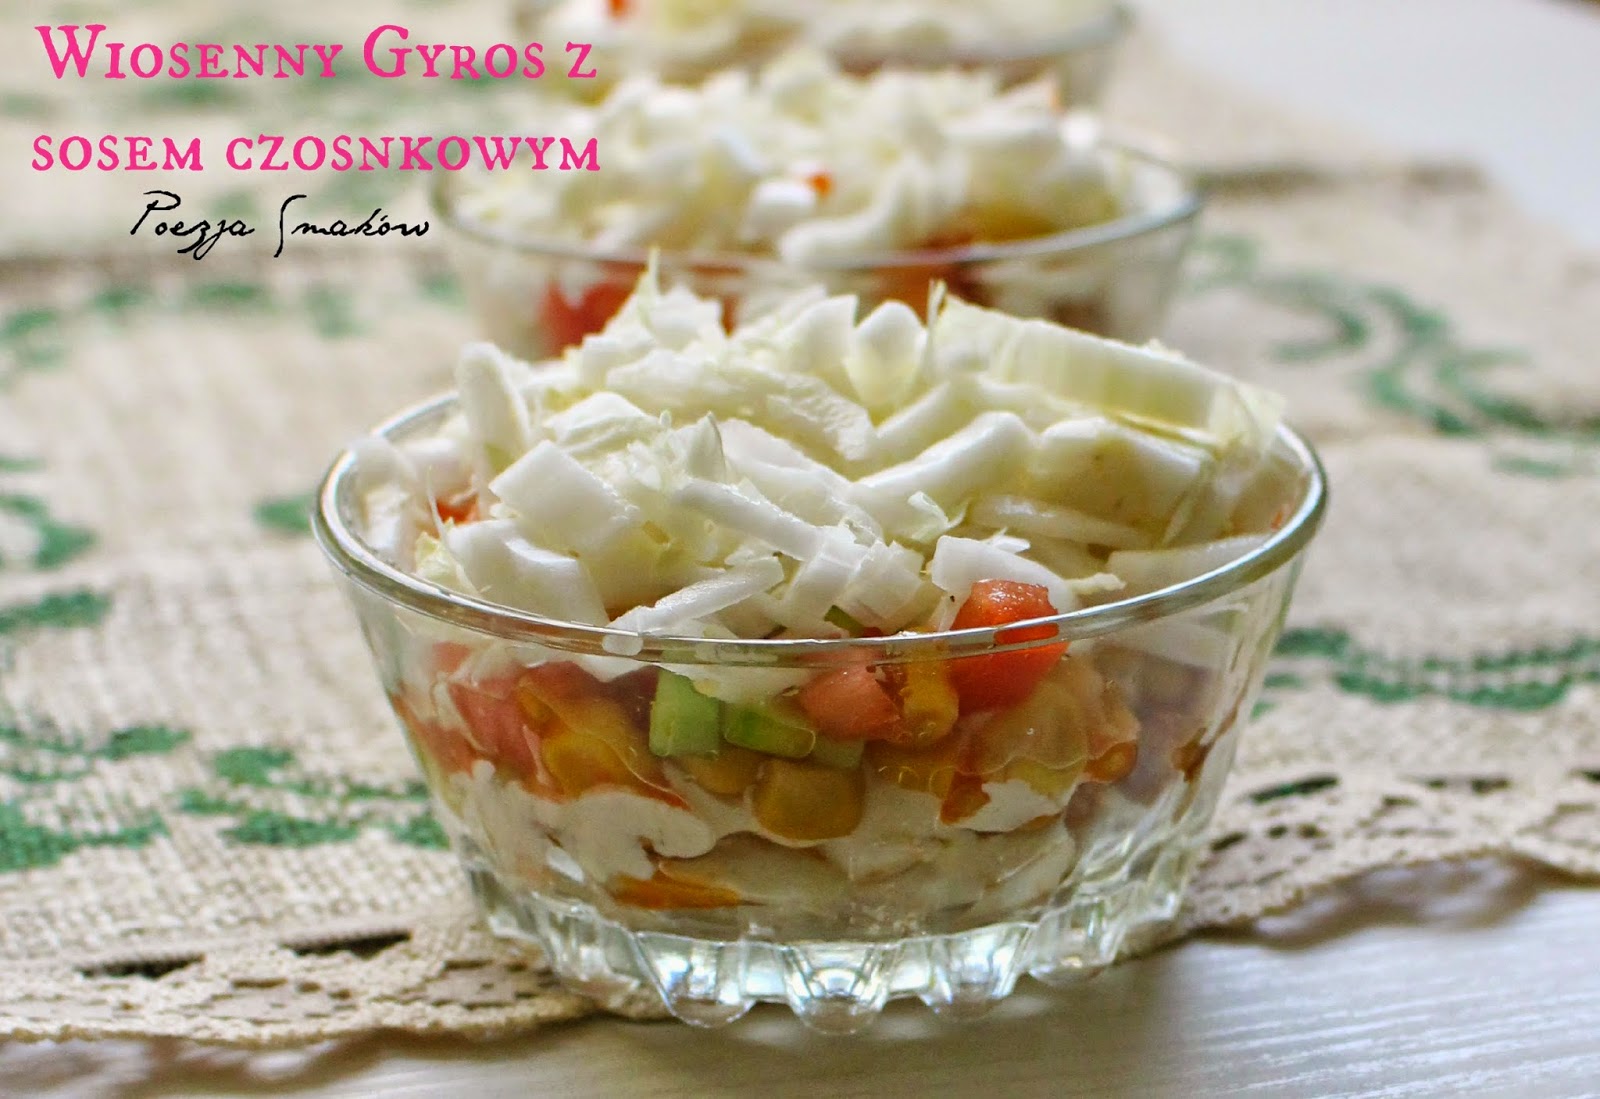 Wiosenny Gyros z sosem czosnkowym – sałatka w wersji light.